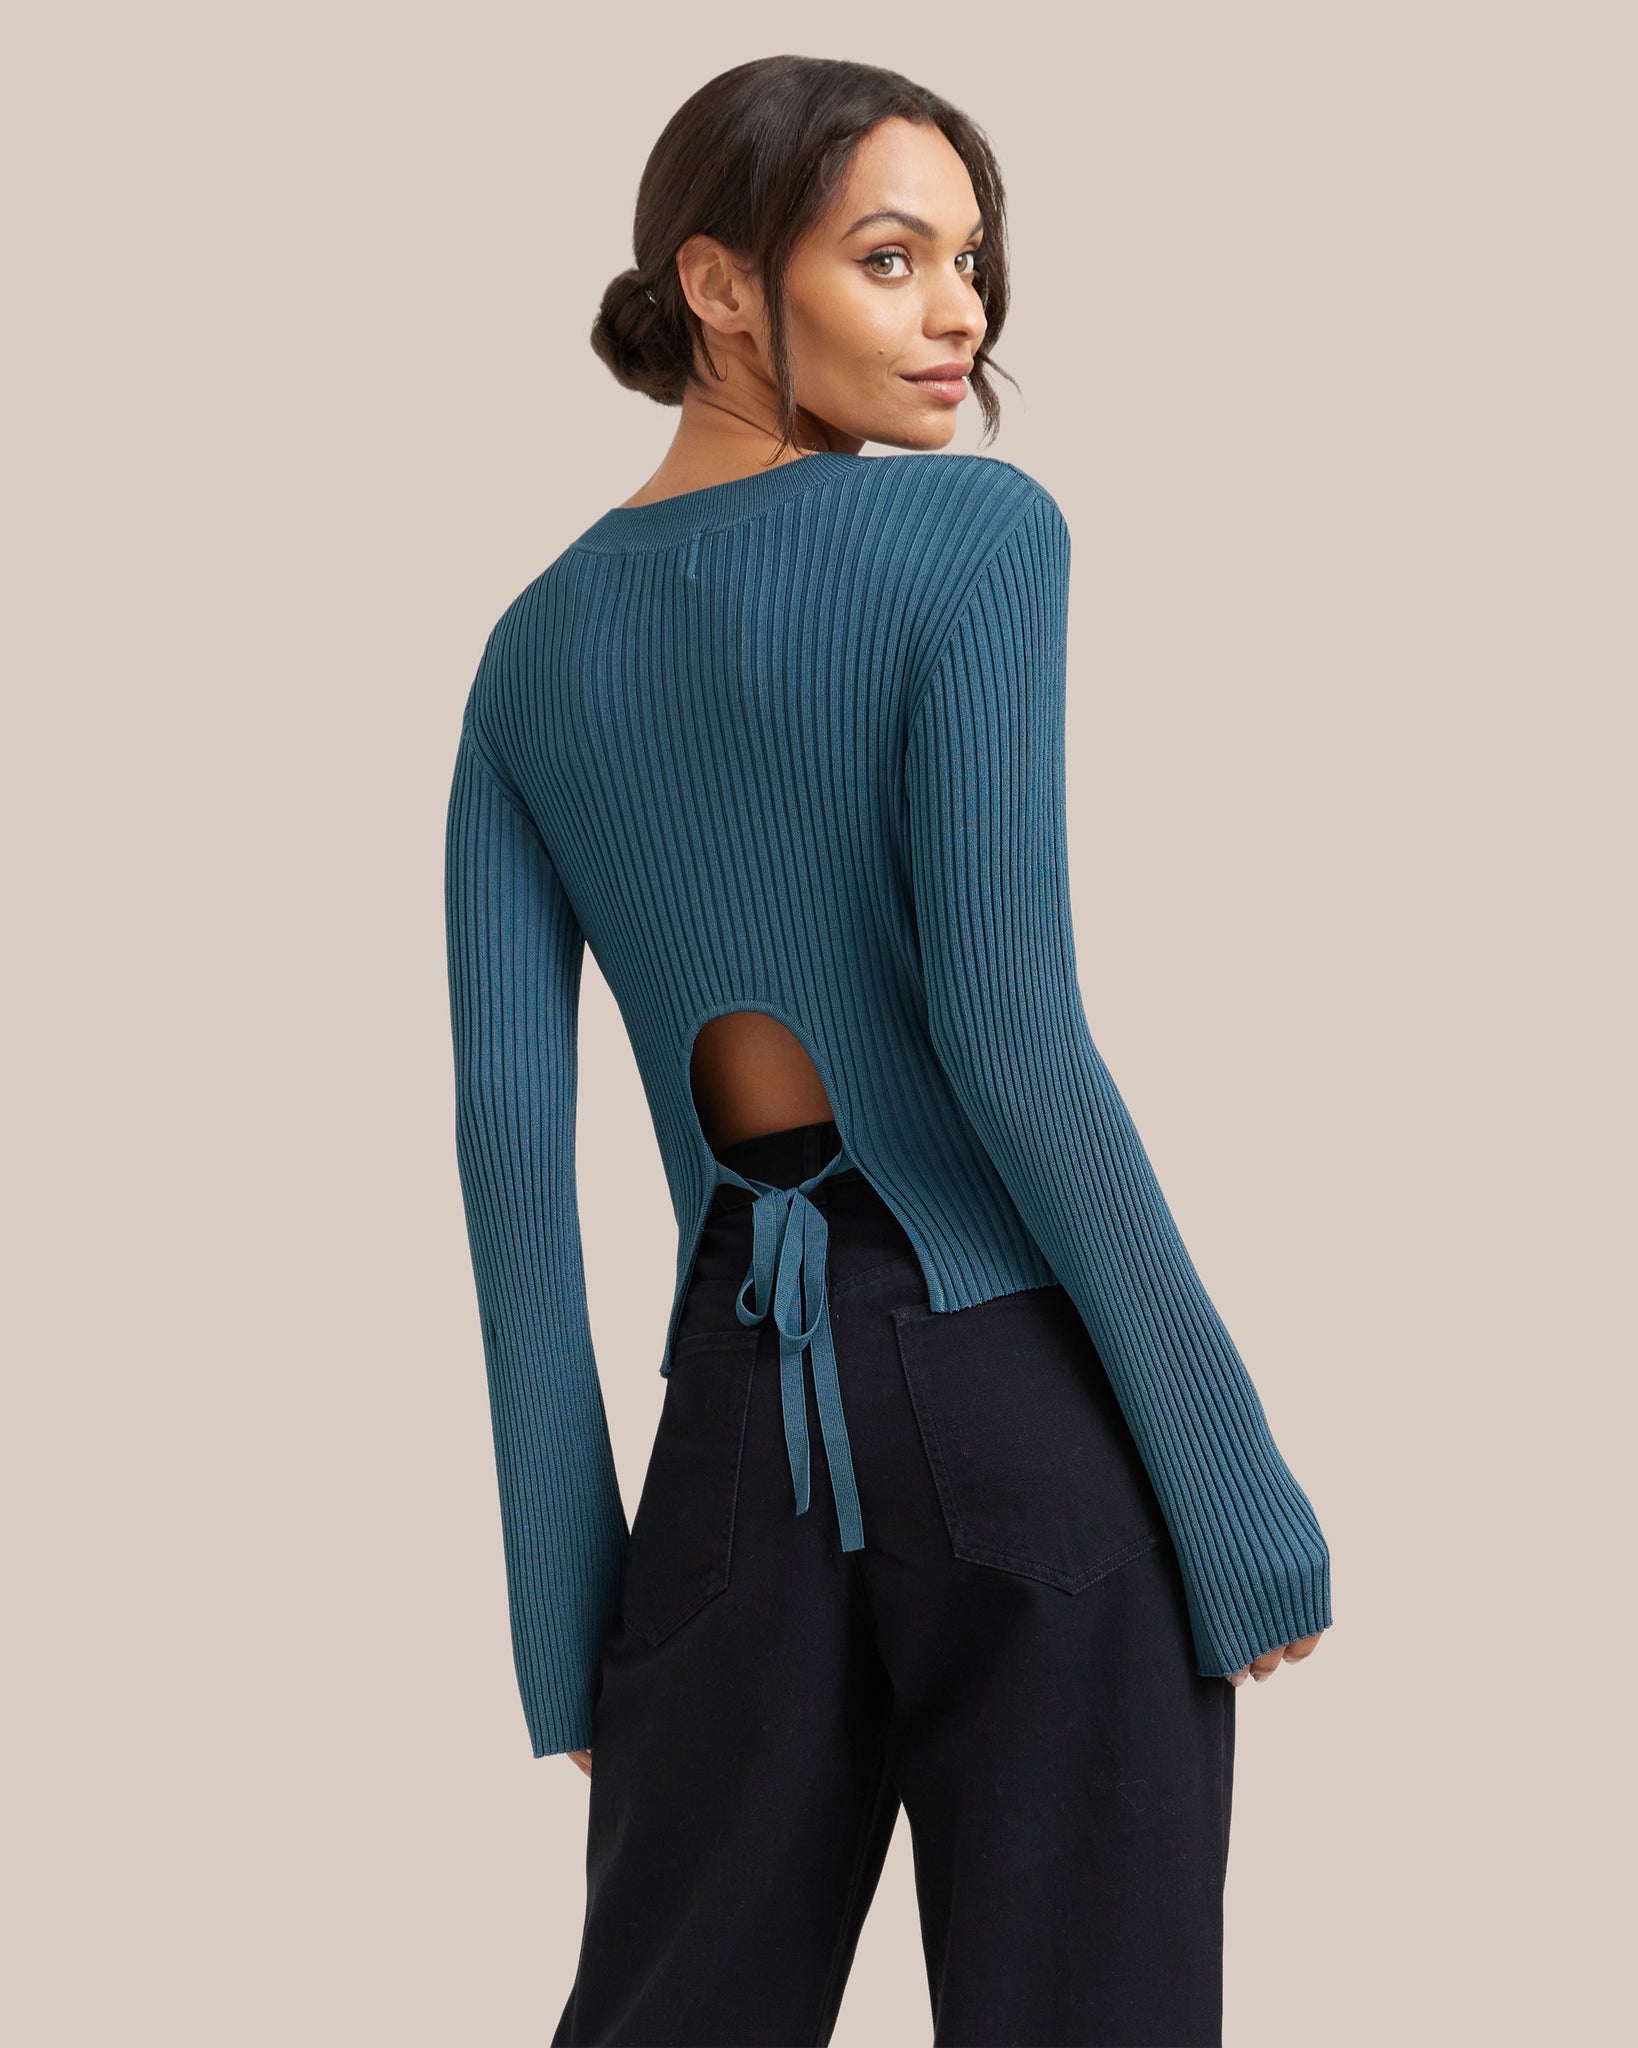 Sophia l Chandi Open-Back Tie Sweater in Size Small